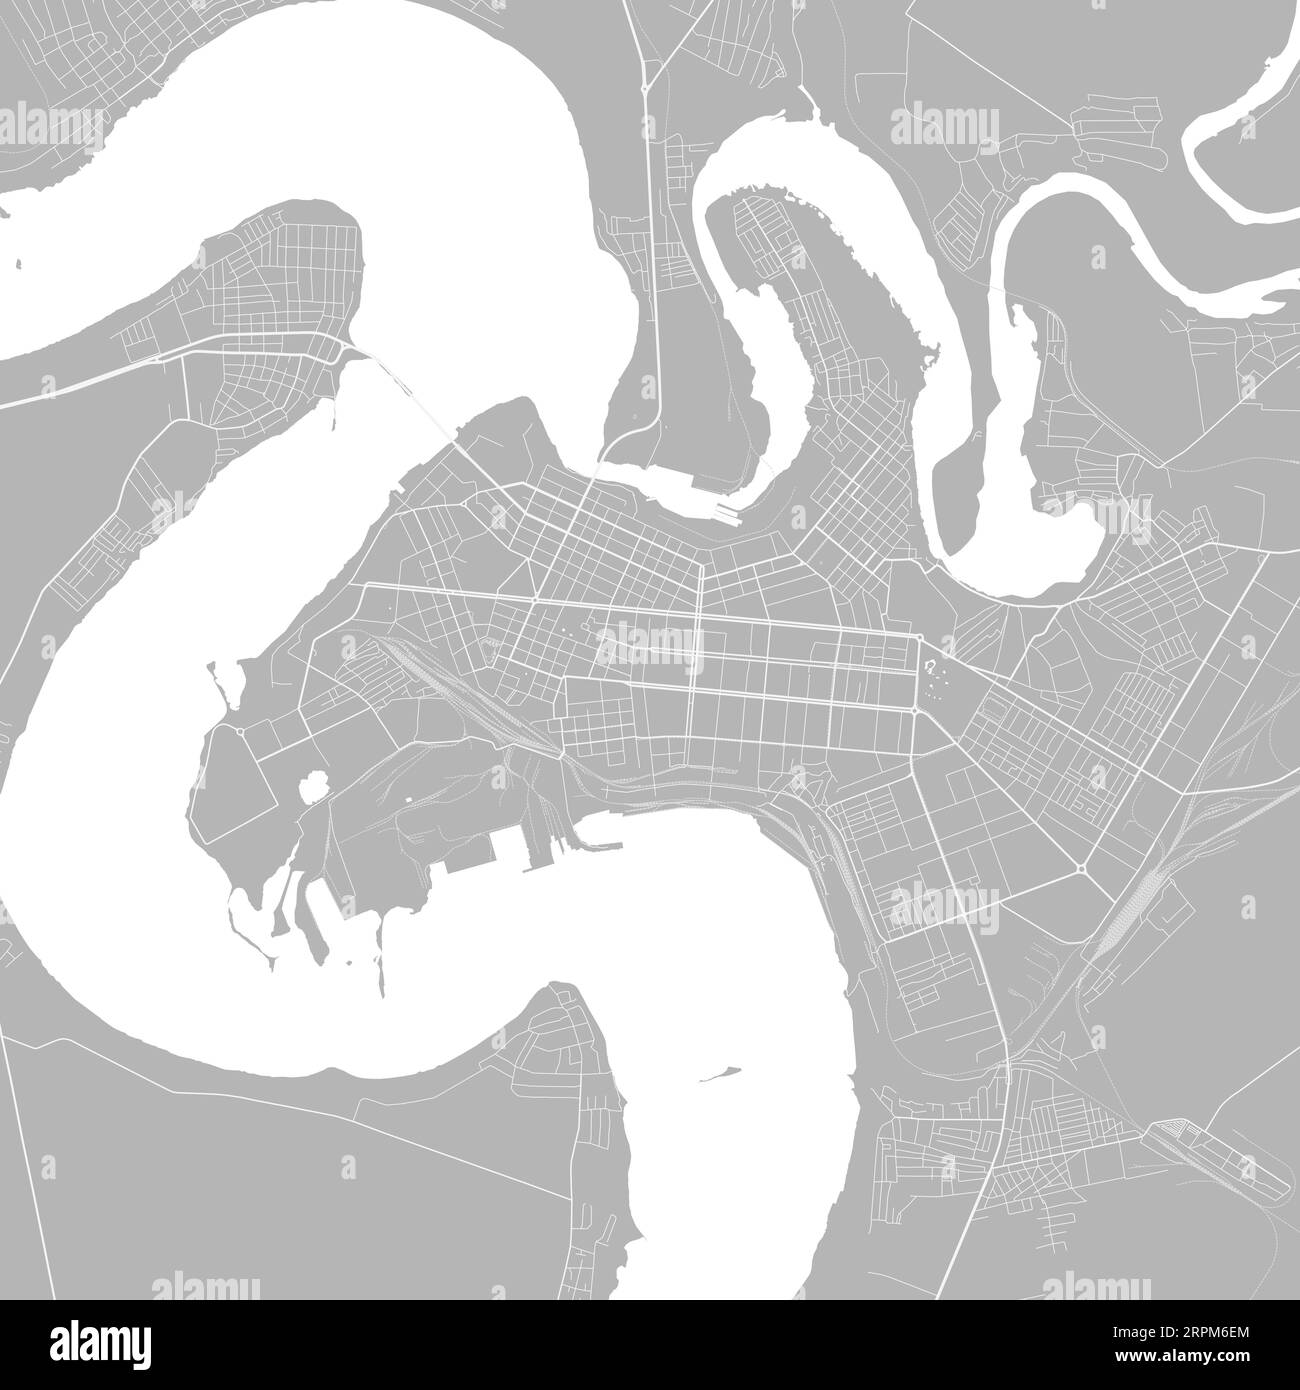 Hintergrund Mykolaiv-Karte, Ukraine, weißes und hellgraues Stadtplakat. Vektorkarte mit Straßen und Wasser. Breitbild-Proportionen, digitales Flachdesign Roadma Stock Vektor